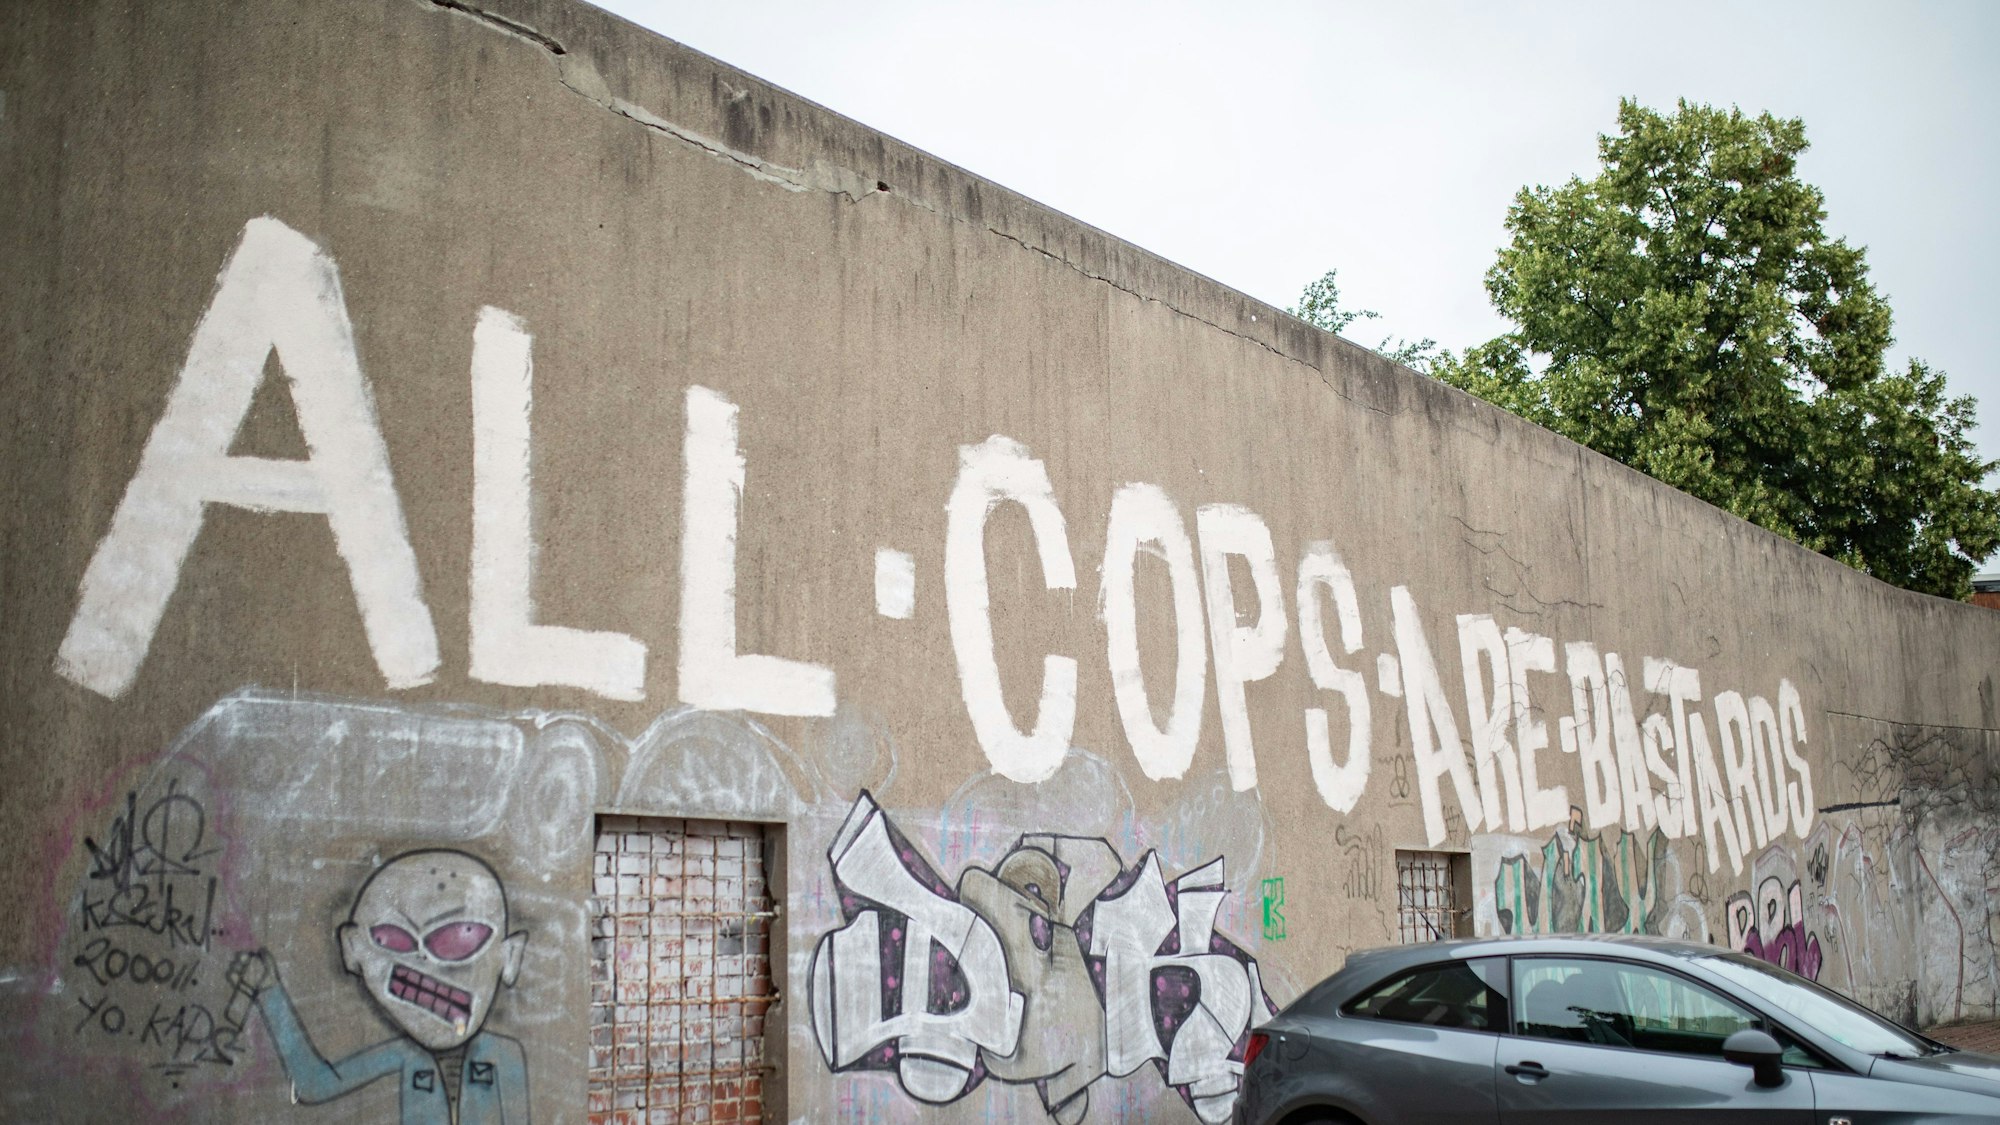 „All Cops are Bastards“ steht auf einer Wand.